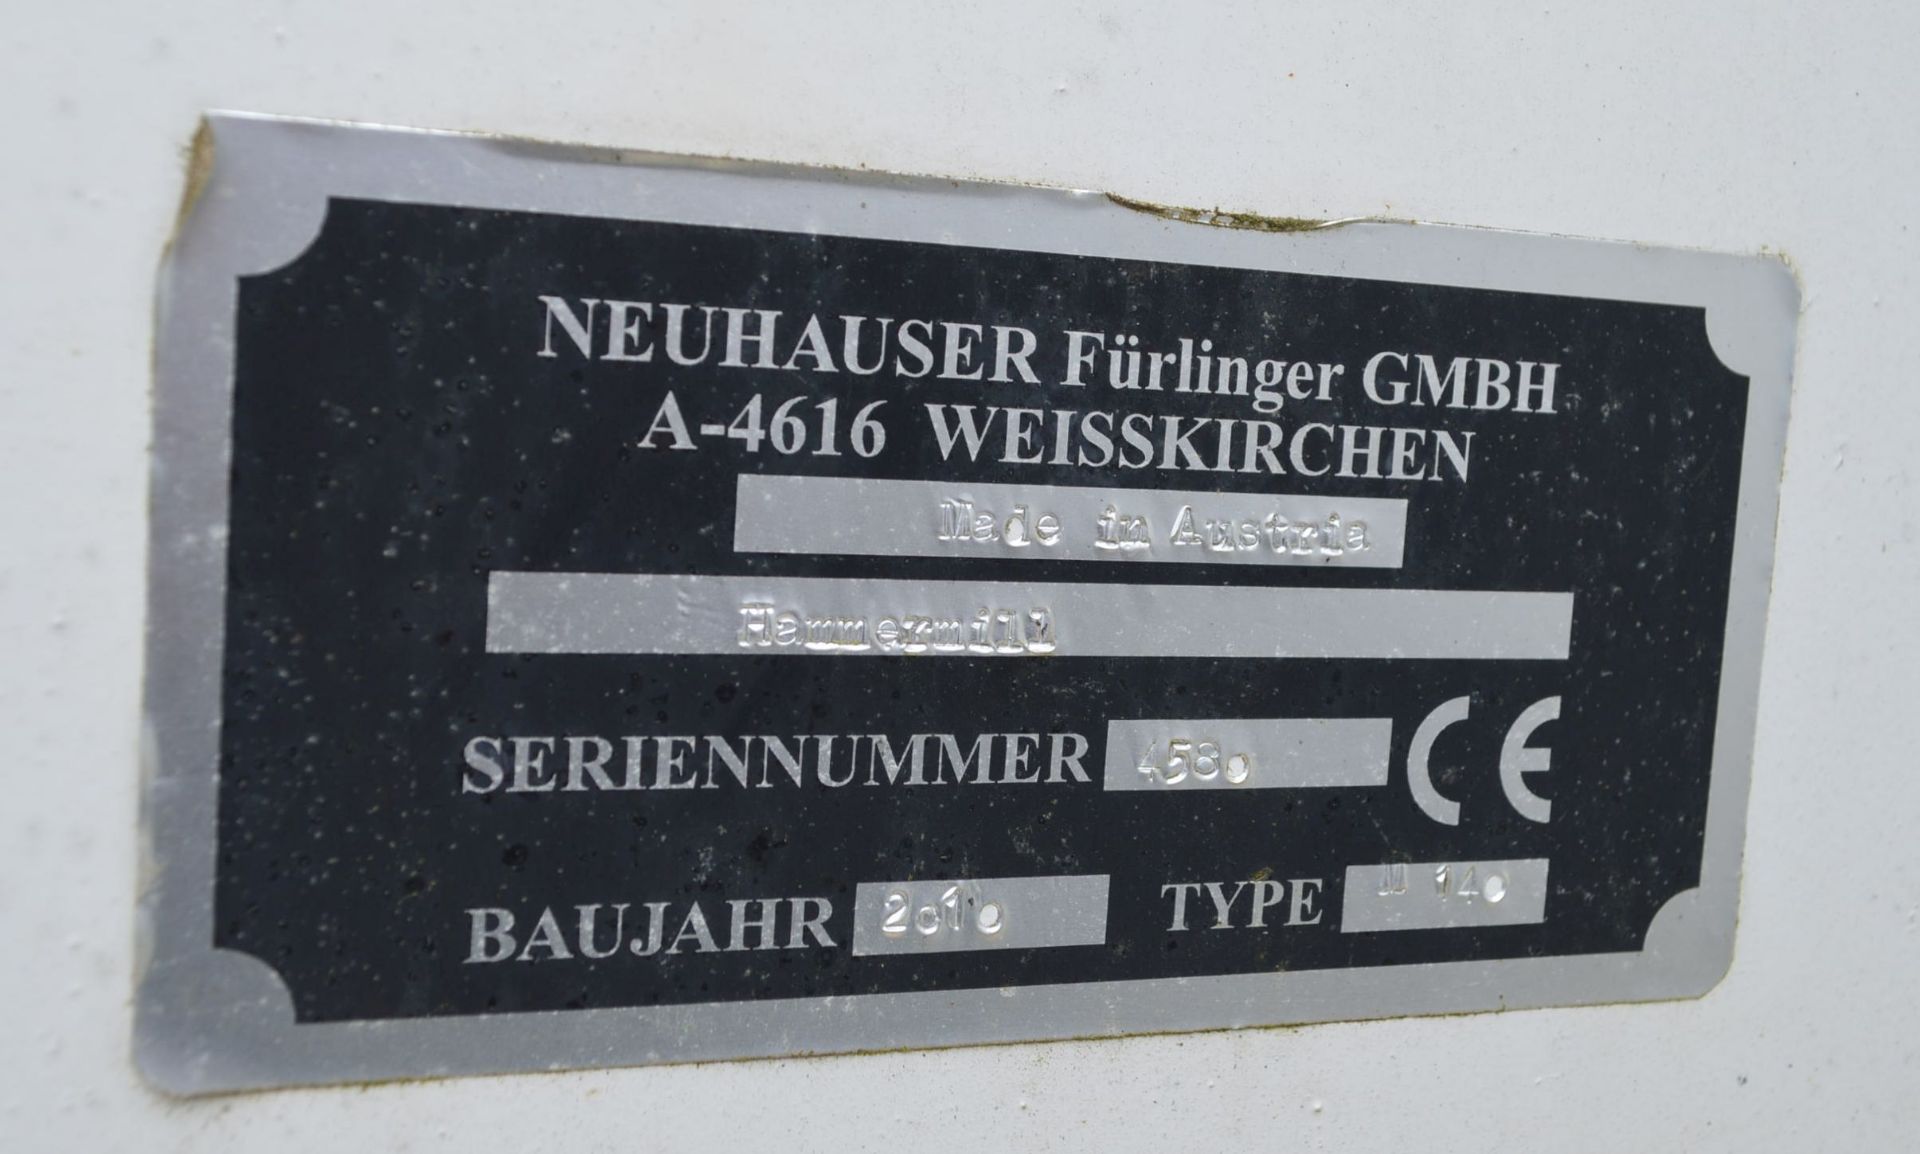 Neuhauser Furlinger M140 HAMMER MILL / Grinder, serial no. 4530, year of manufacture 2010, with - Bild 4 aus 7